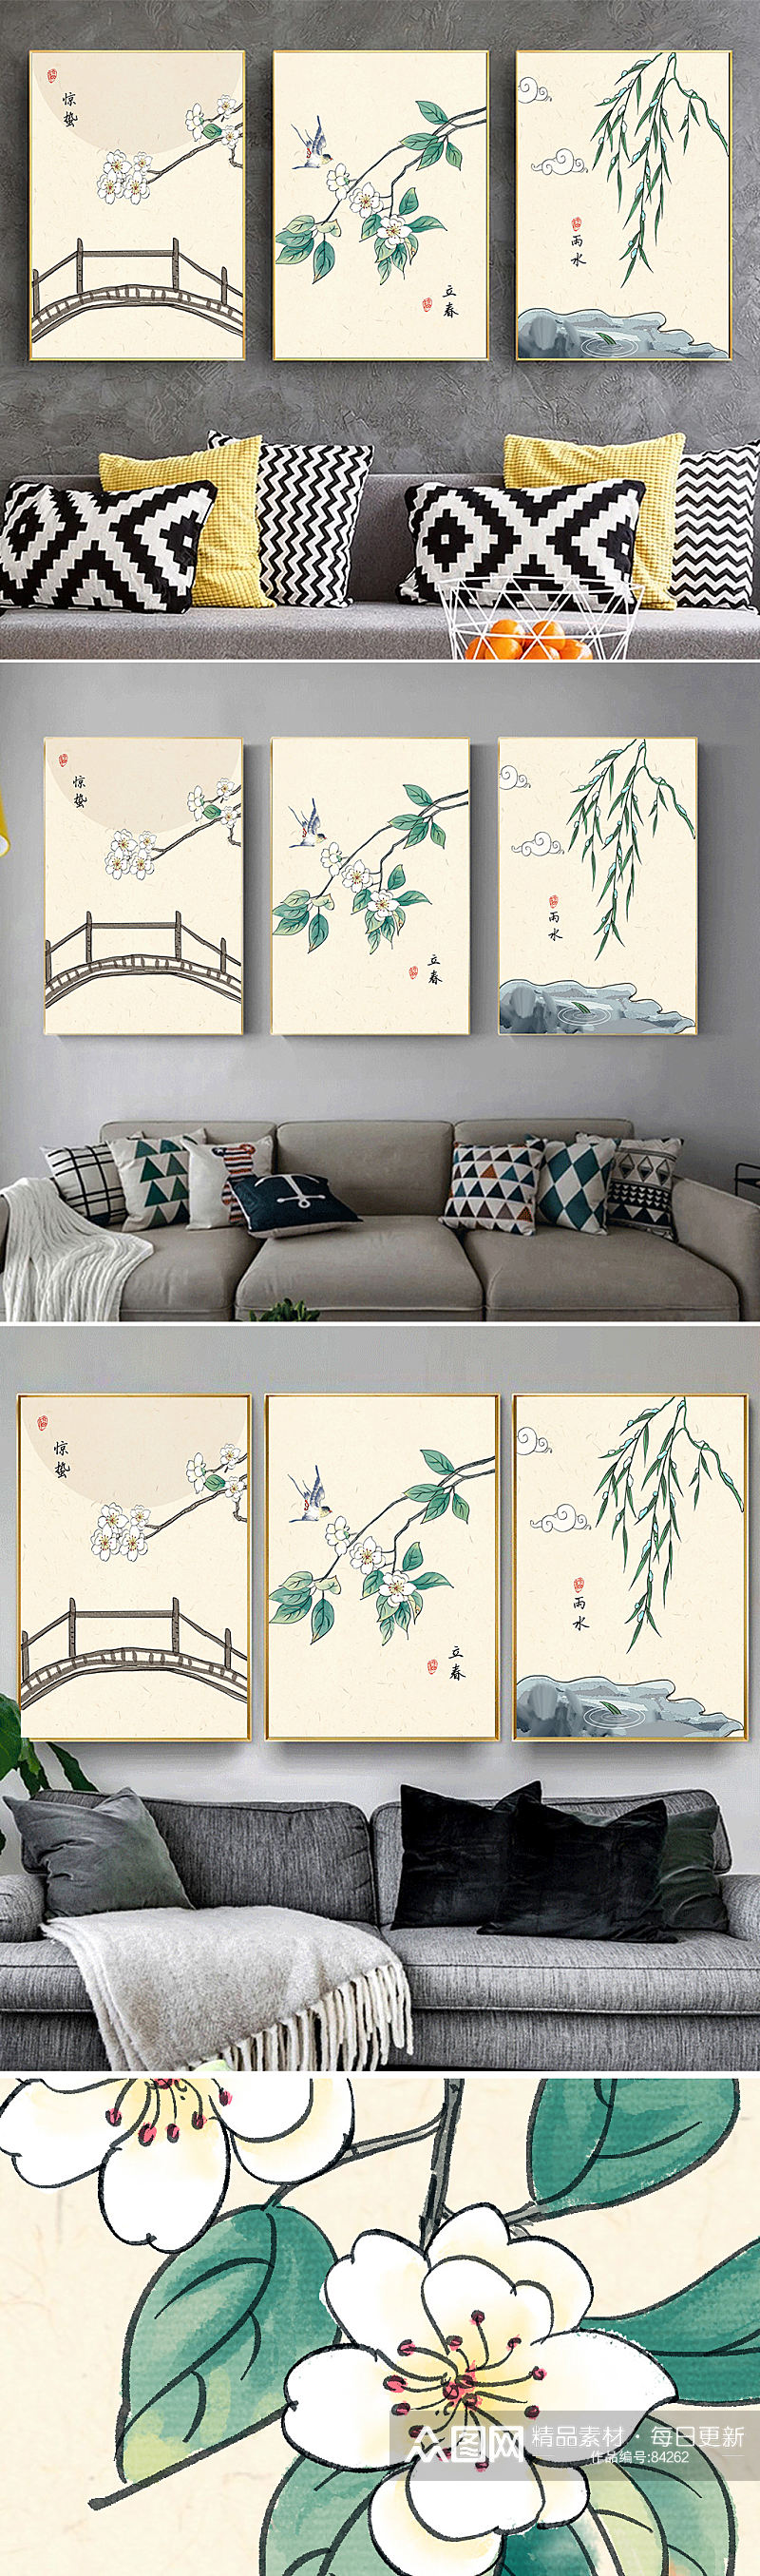 中式手绘二十四节气装饰画素材